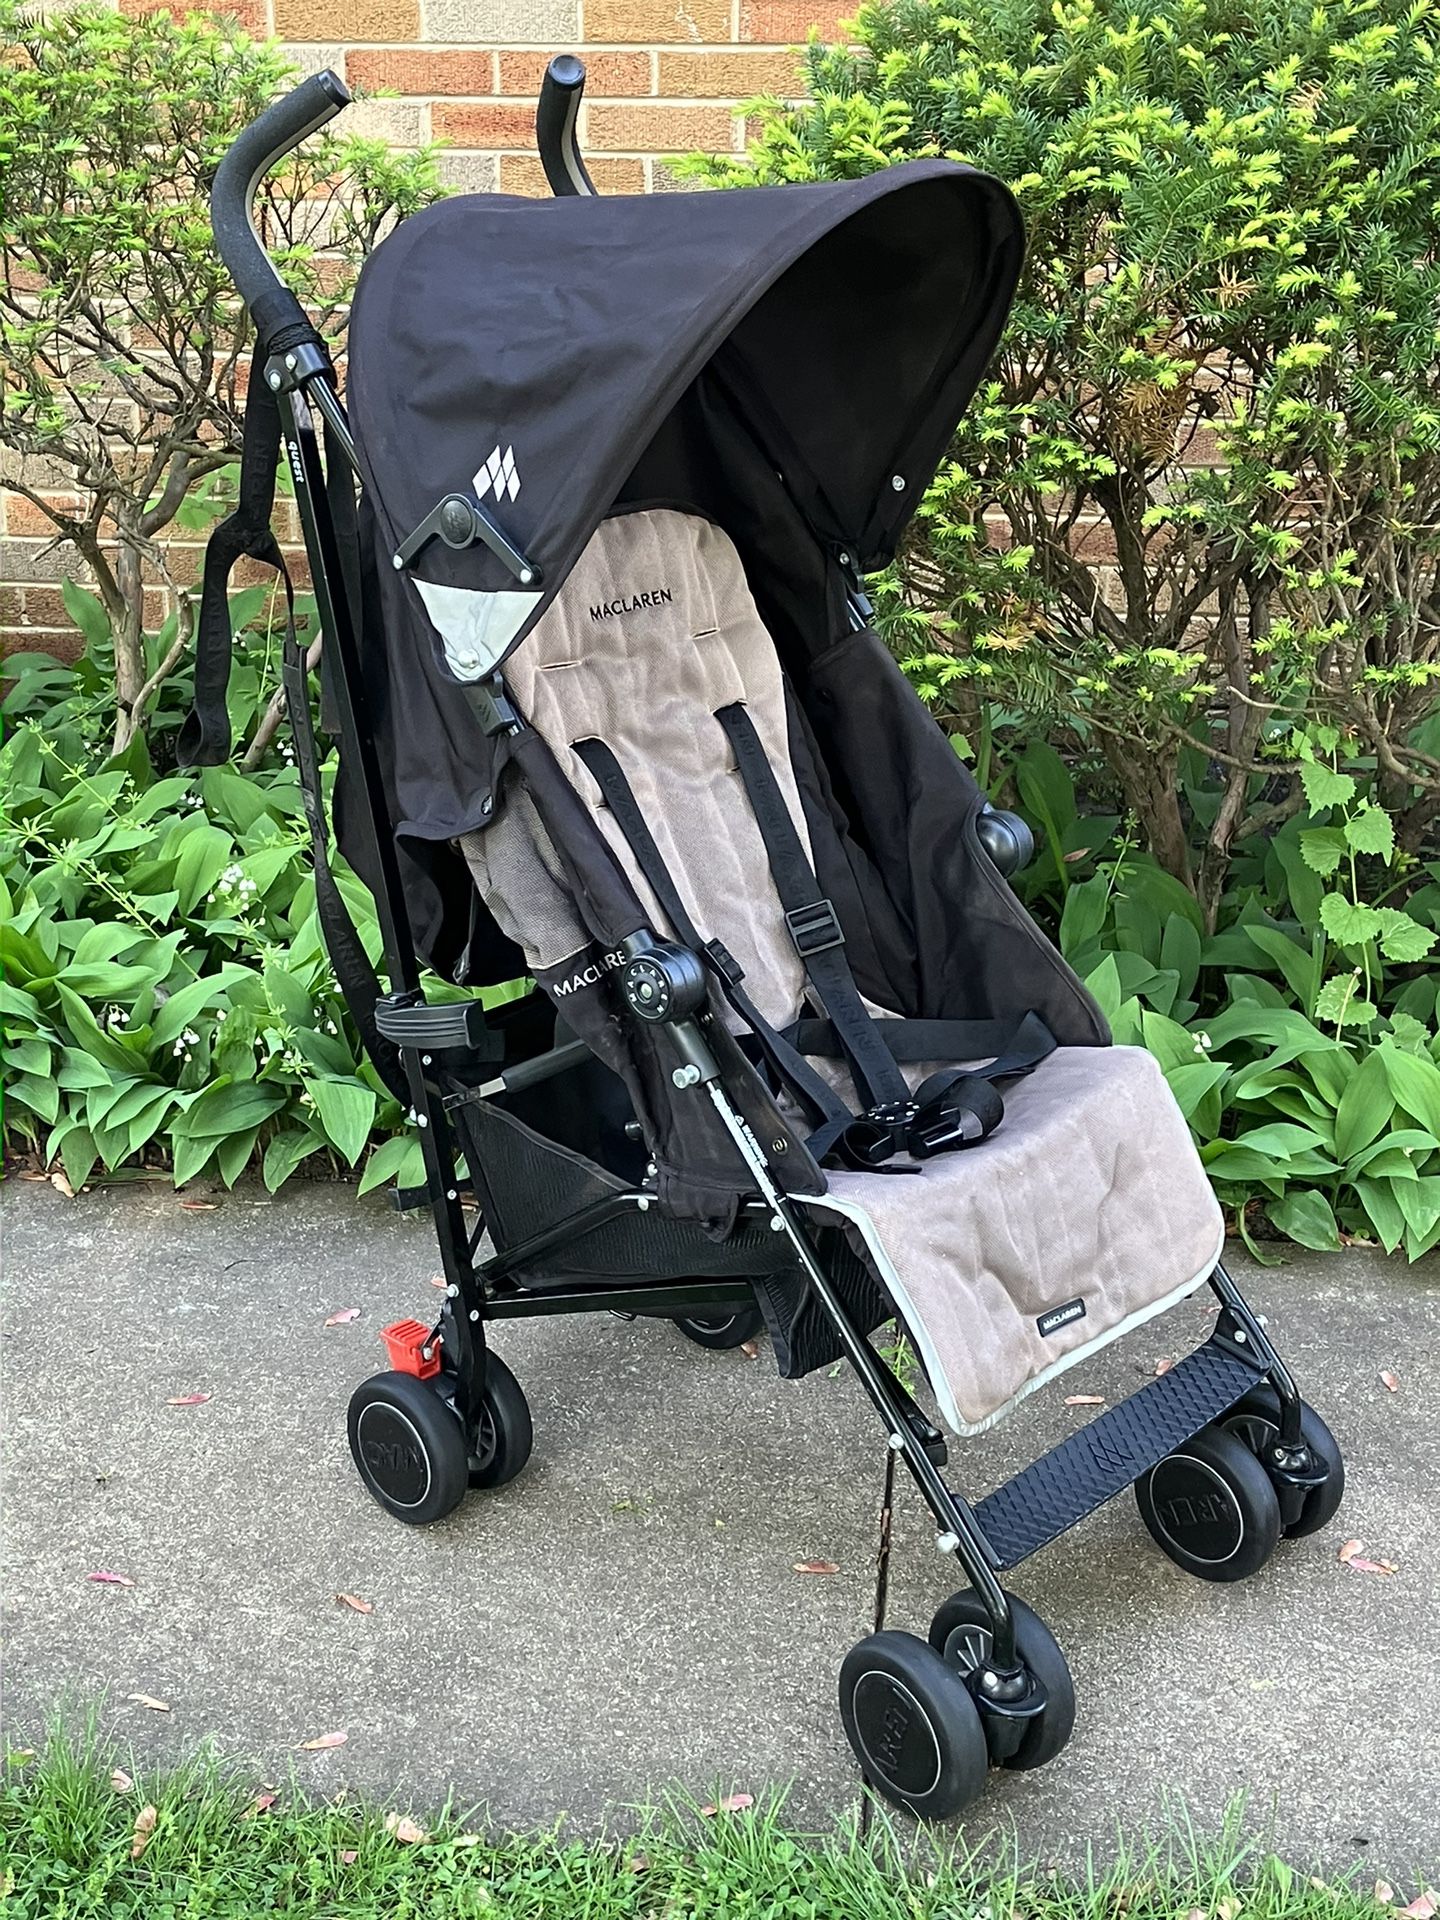 MacLaren Quest Baby Stroller